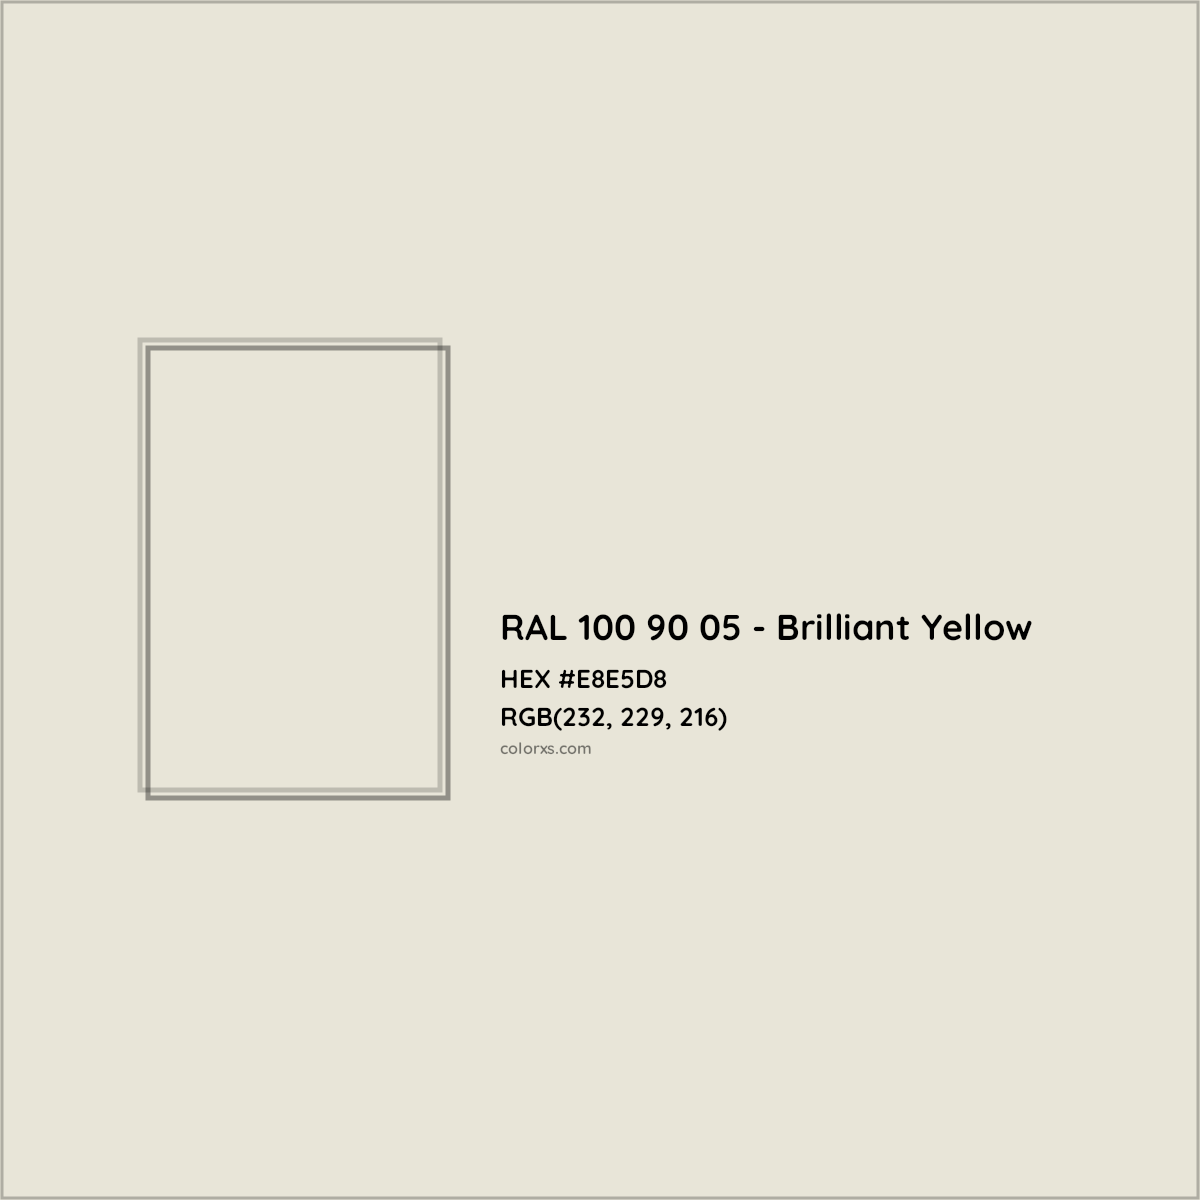 HEX #E8E5D8 RAL 100 90 05 - Brilliant Yellow CMS RAL Design - Color Code